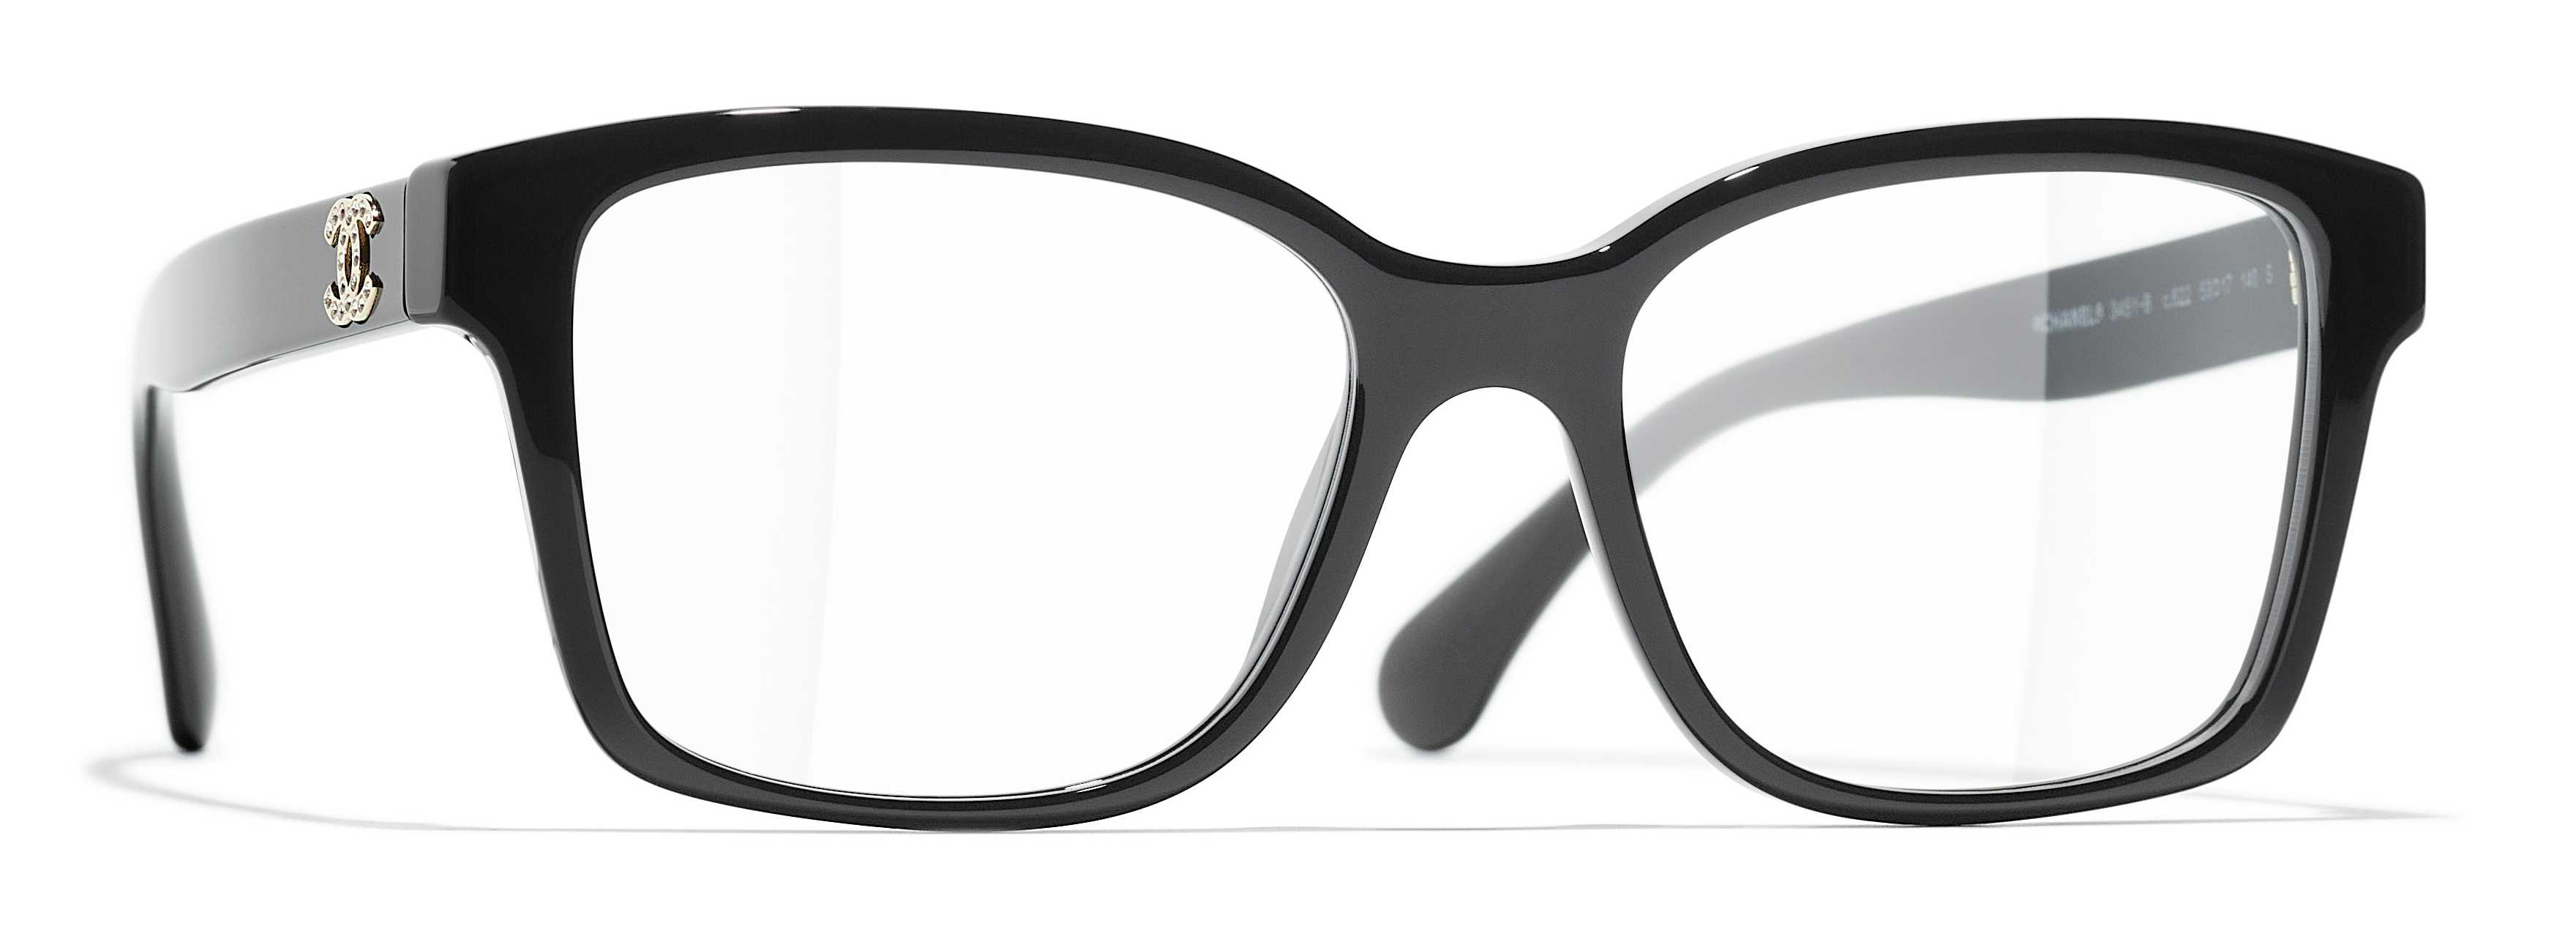 chanel mens glasses frames